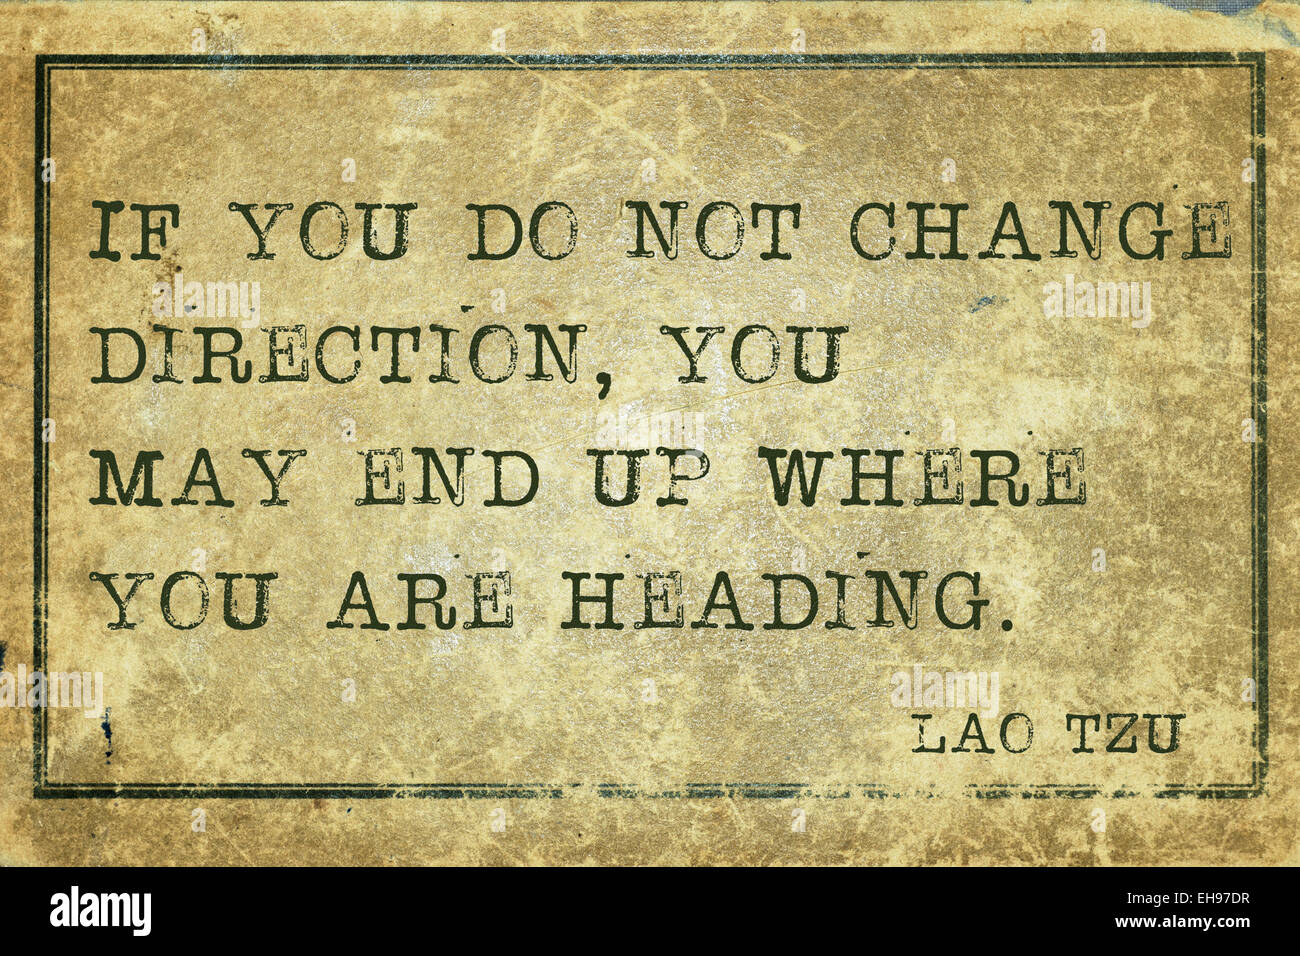 Se non si cambia direzione - antico filosofo cinese Lao Tzu preventivo stampato su grunge cartone vintage Foto Stock